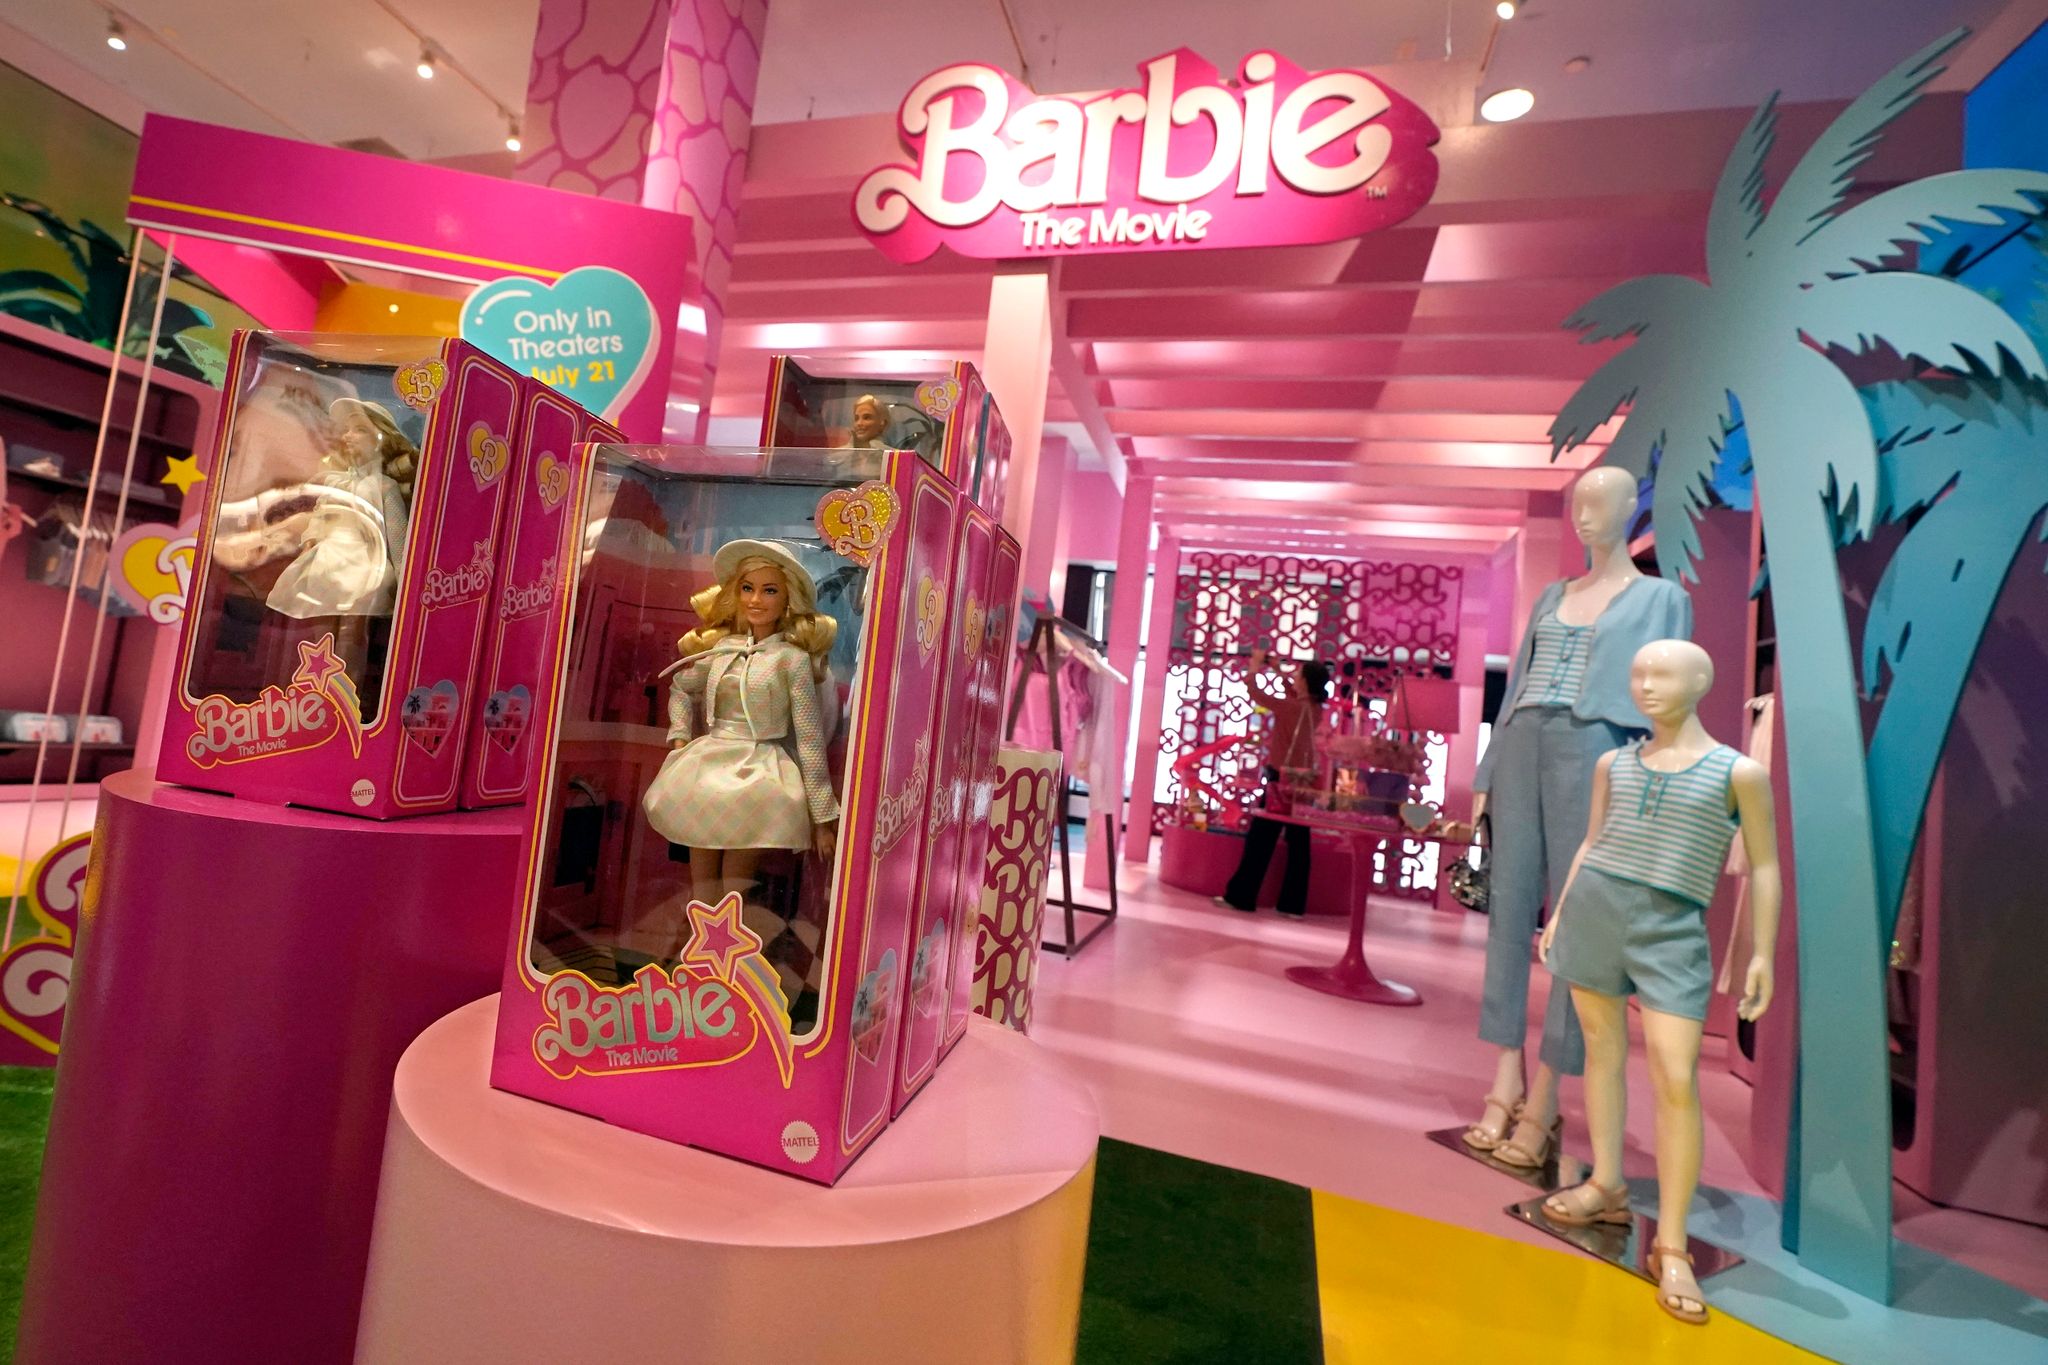 Der «Barbie»-Film hat weltweit mehr als eine Milliarde Dollar eingespielt und auch das zuvor oft schwächelnde Interesse an Barbie-Produkten angekurbelt.